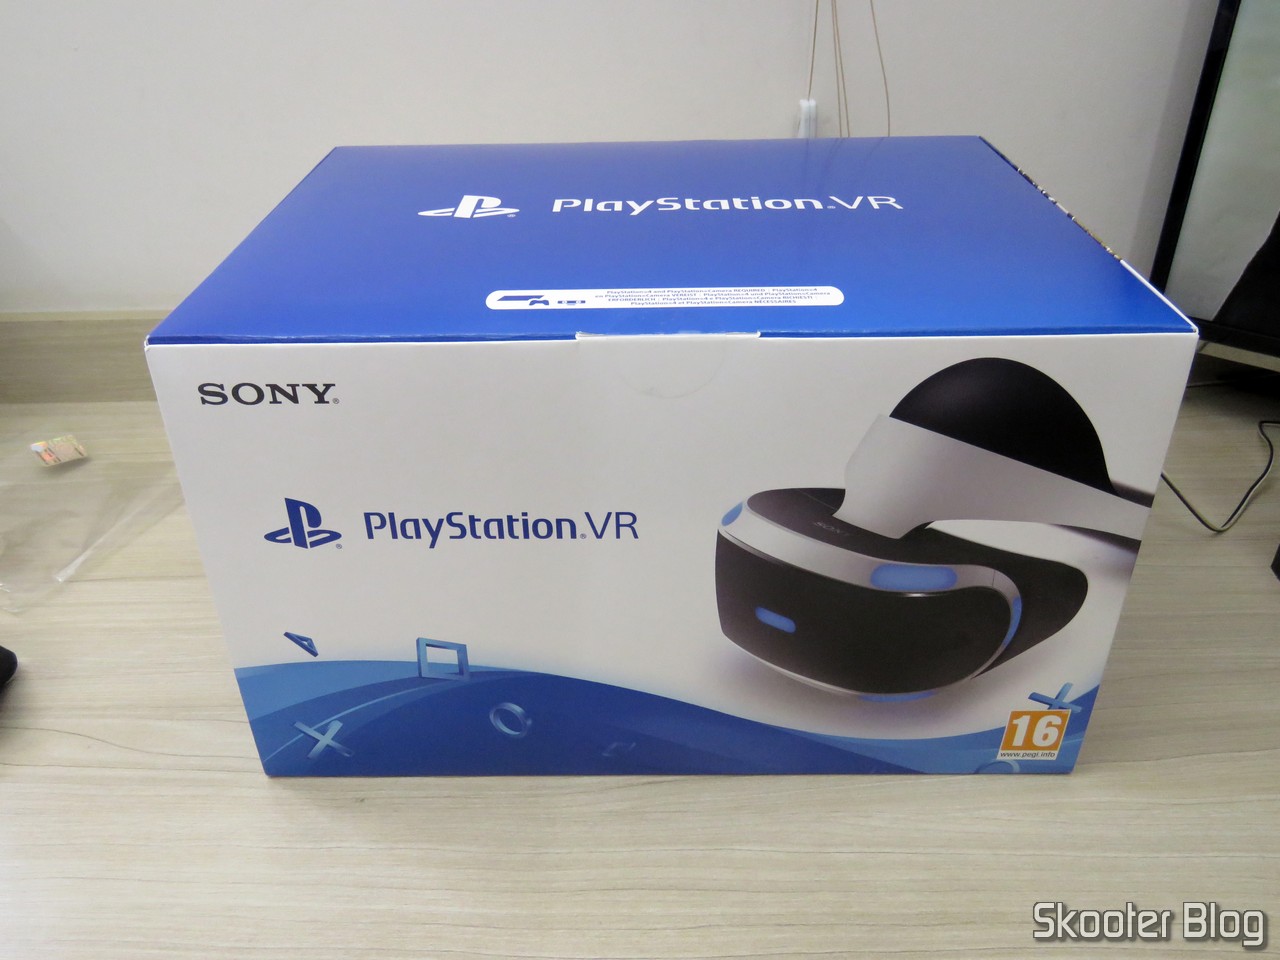 PlayStation VR 2 chega ao Brasil em fevereiro custando mais que um